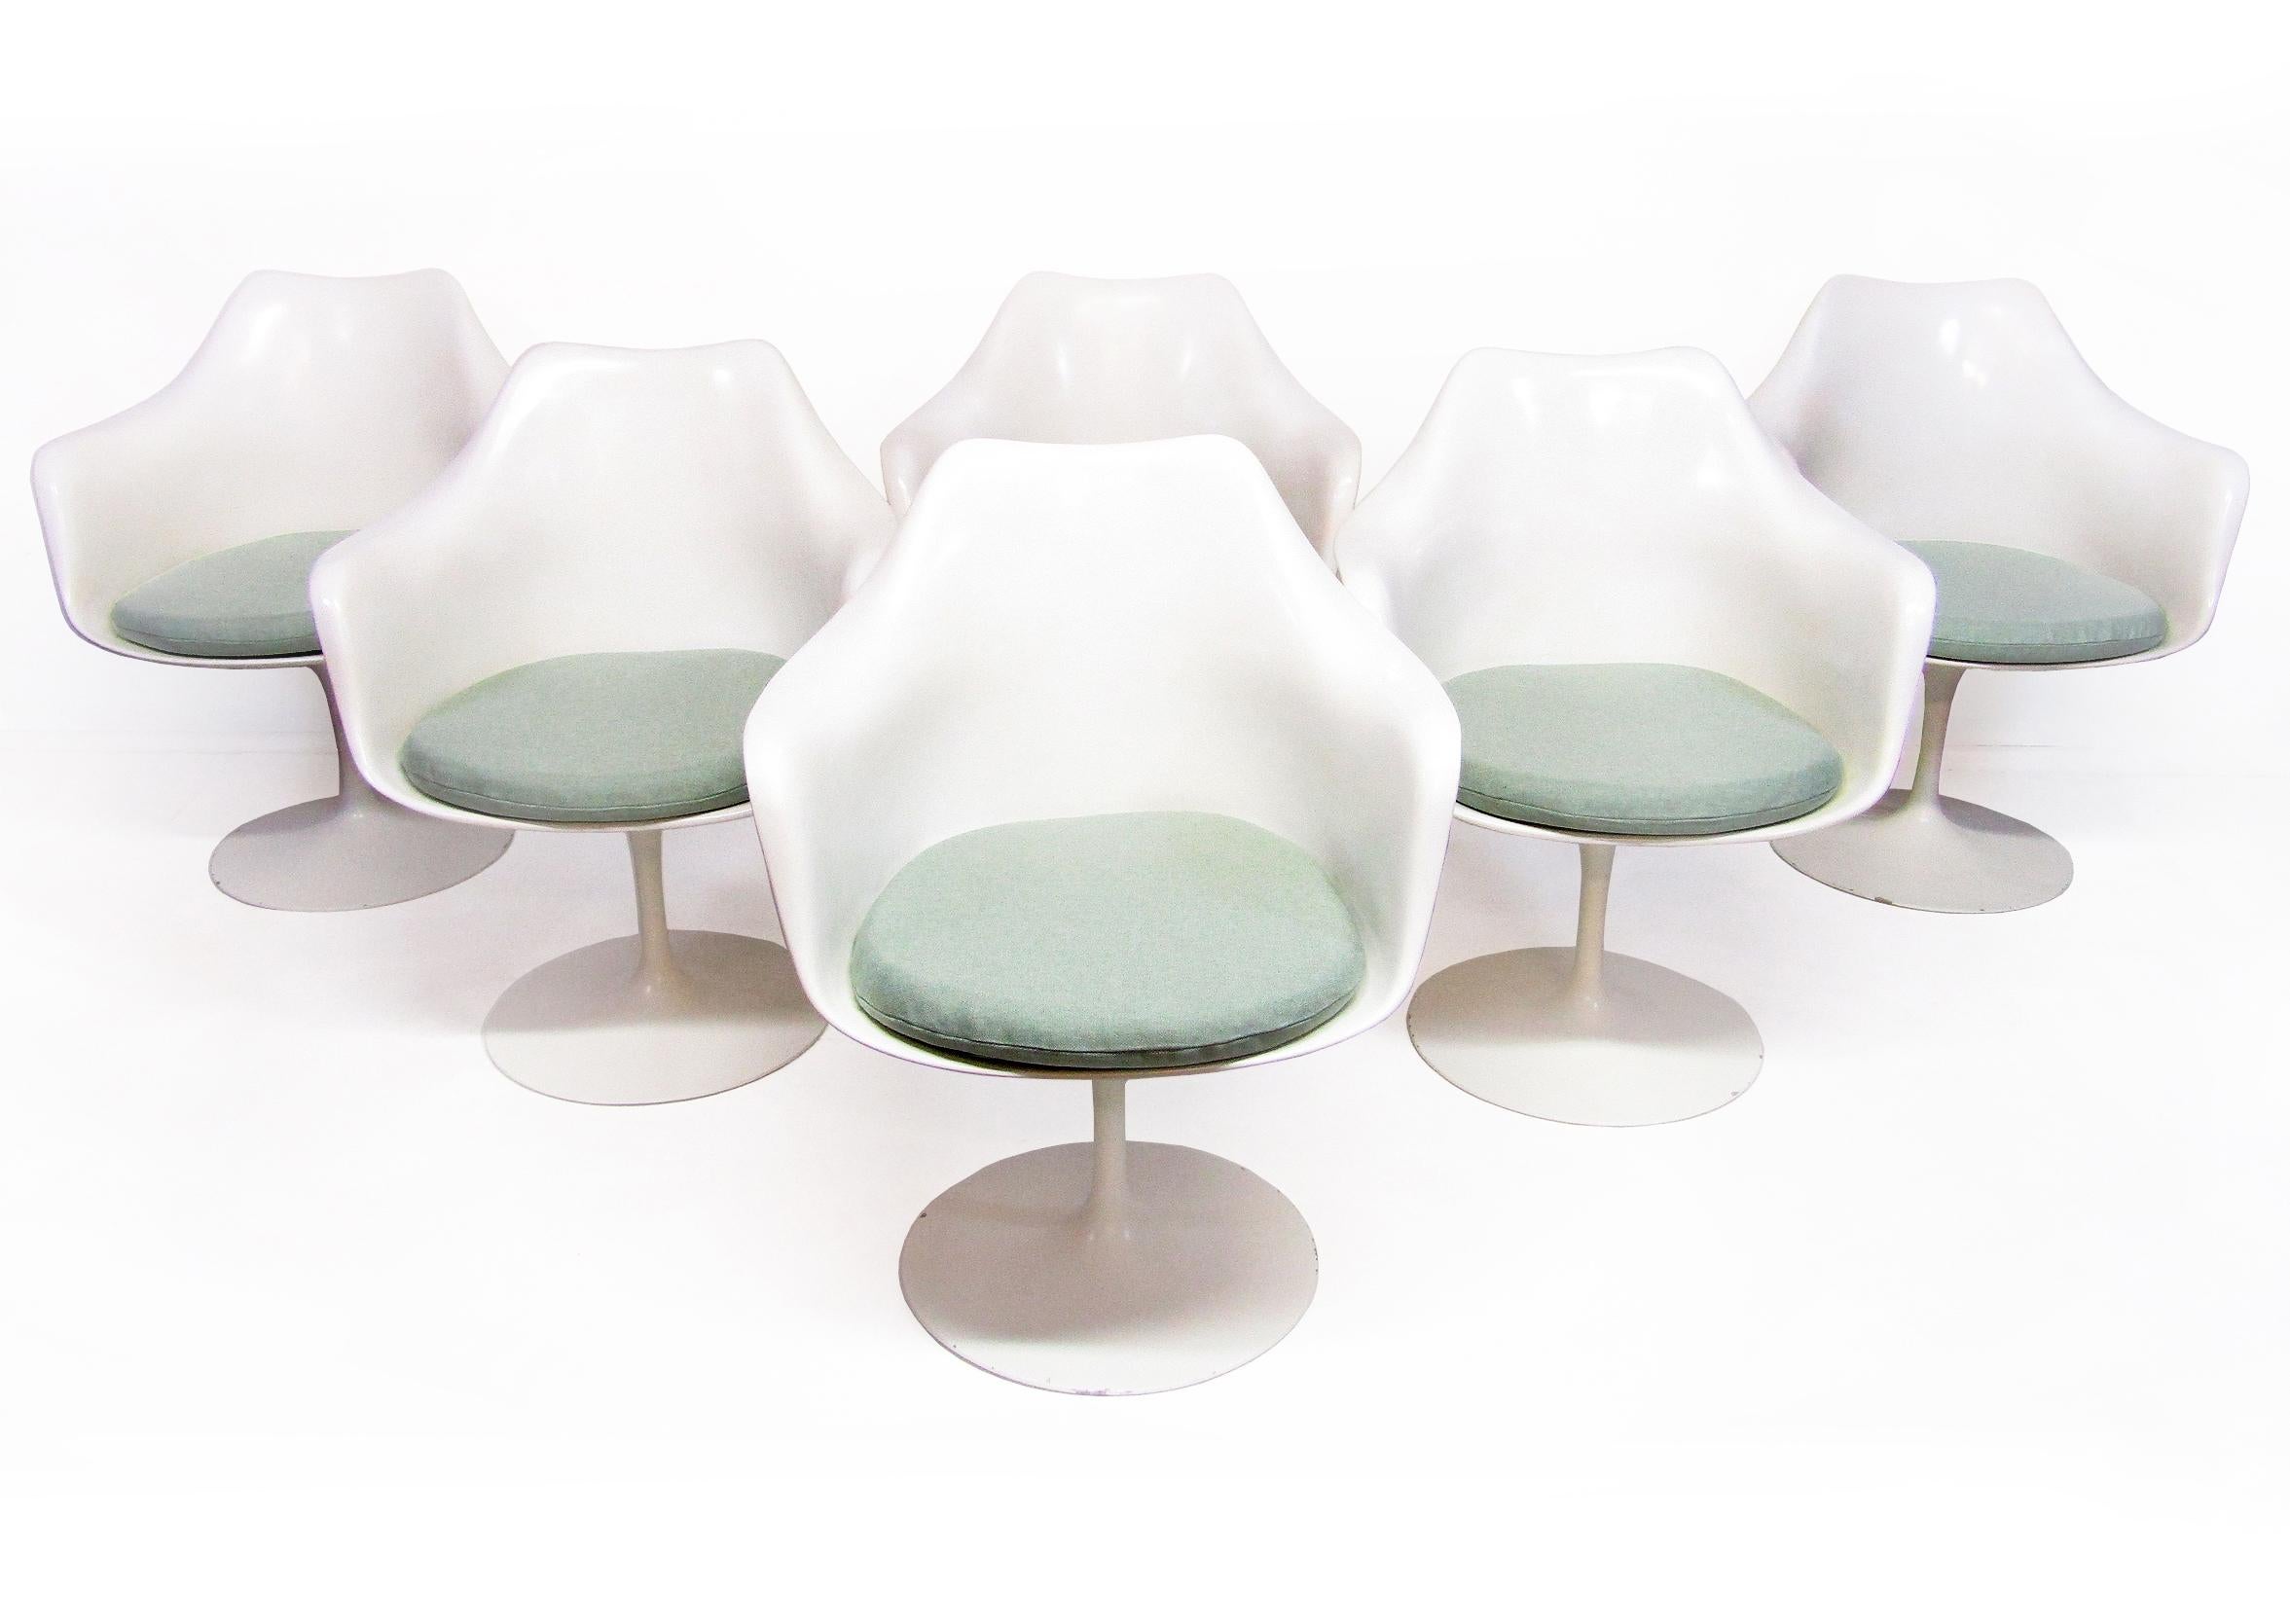 Originales Tulpen-Esszimmer von 1970 von Eero Saarinen für Knoll. 

Saarinens Tulpenentwurf verbindet Anmut mit Zweckmäßigkeit. Der seltene Tulpentisch aus Rio-Palisander hat eine schöne Maserung und macht mit 137 cm Durchmesser einen